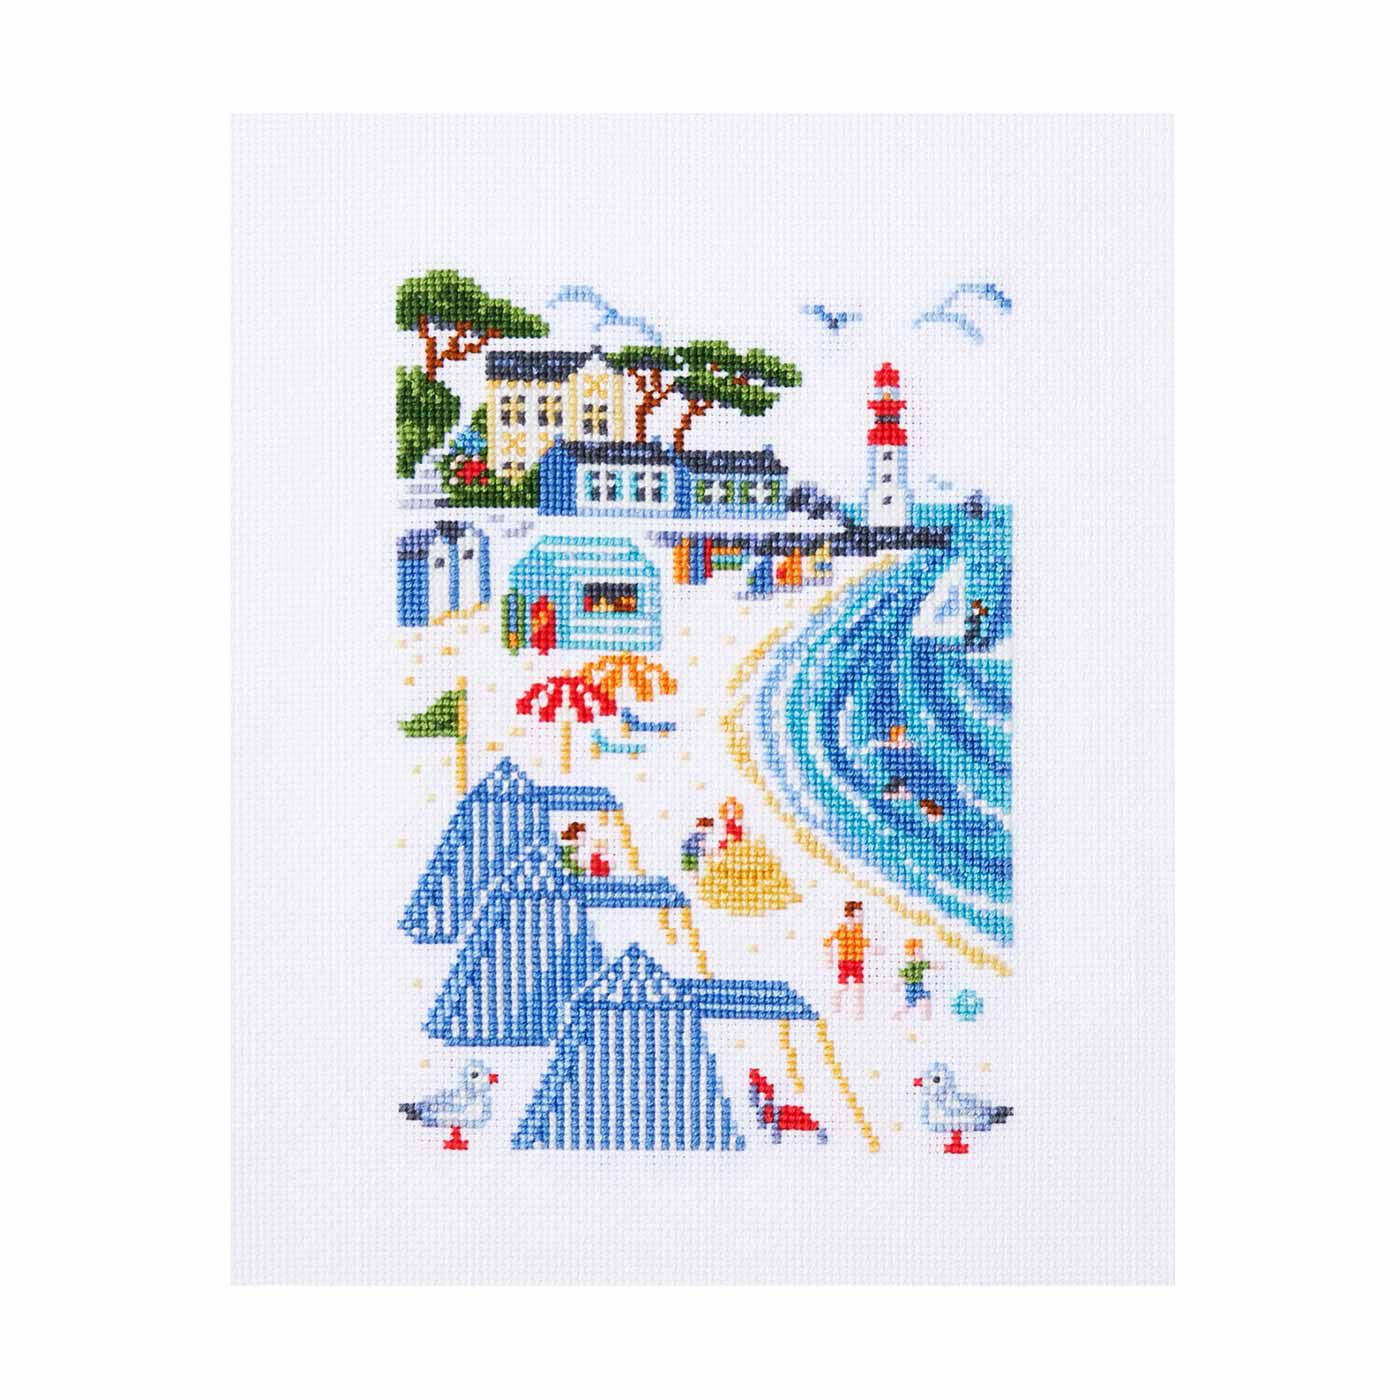 クチュリエ|アンヌさんが描くフランスの暮らしと四季の風景クロスステッチの会|La Plage:海岸